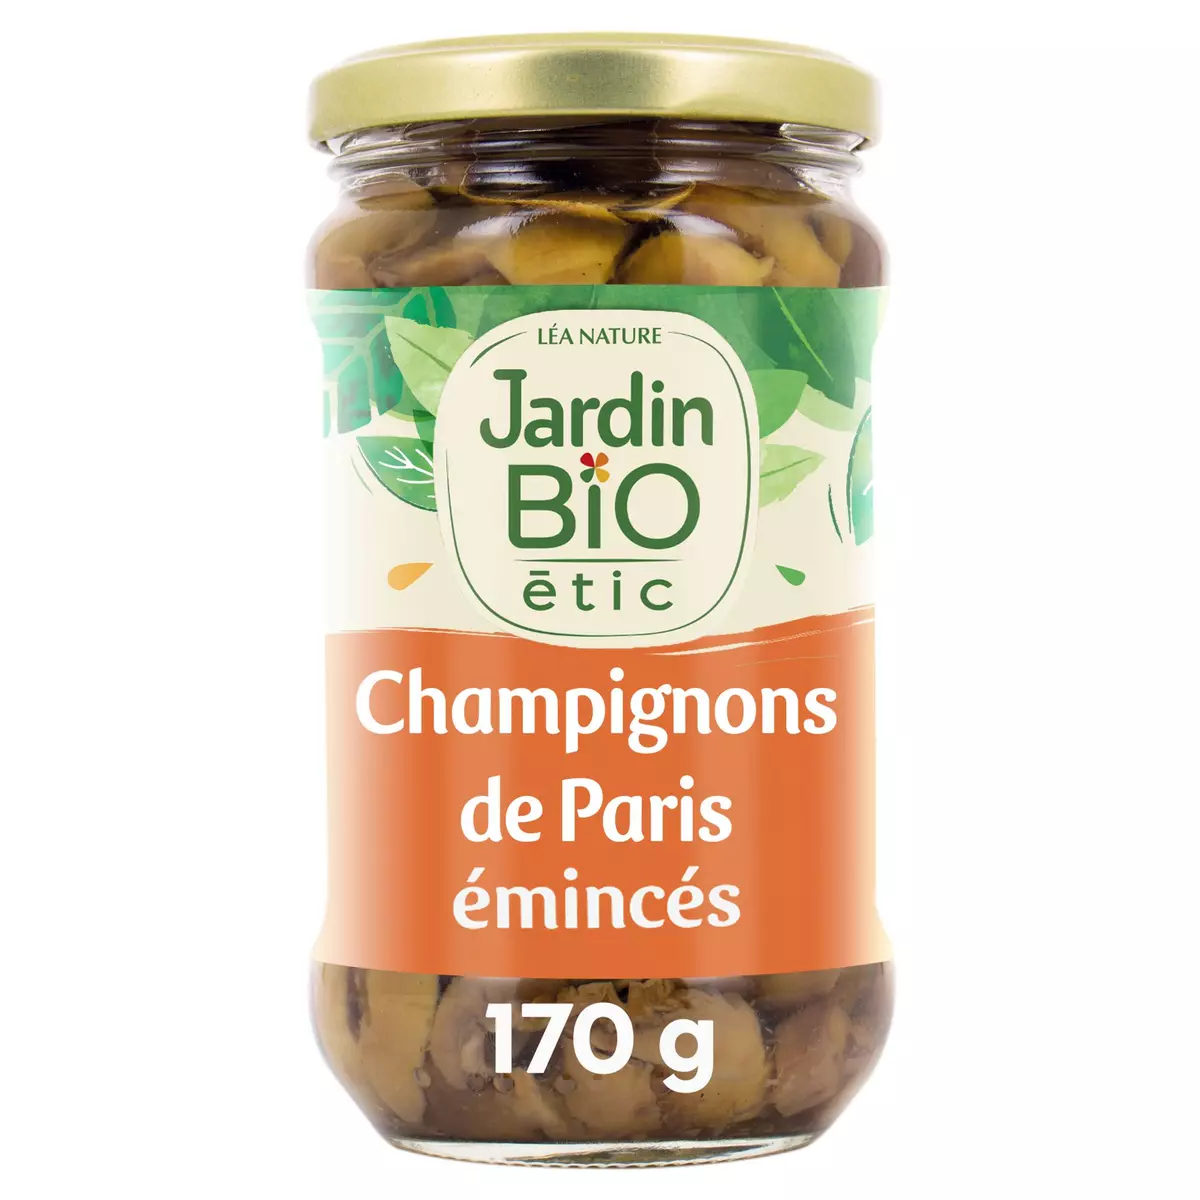 JARDIN BIO ETIC Champignons de Paris émincés en bocal 280g